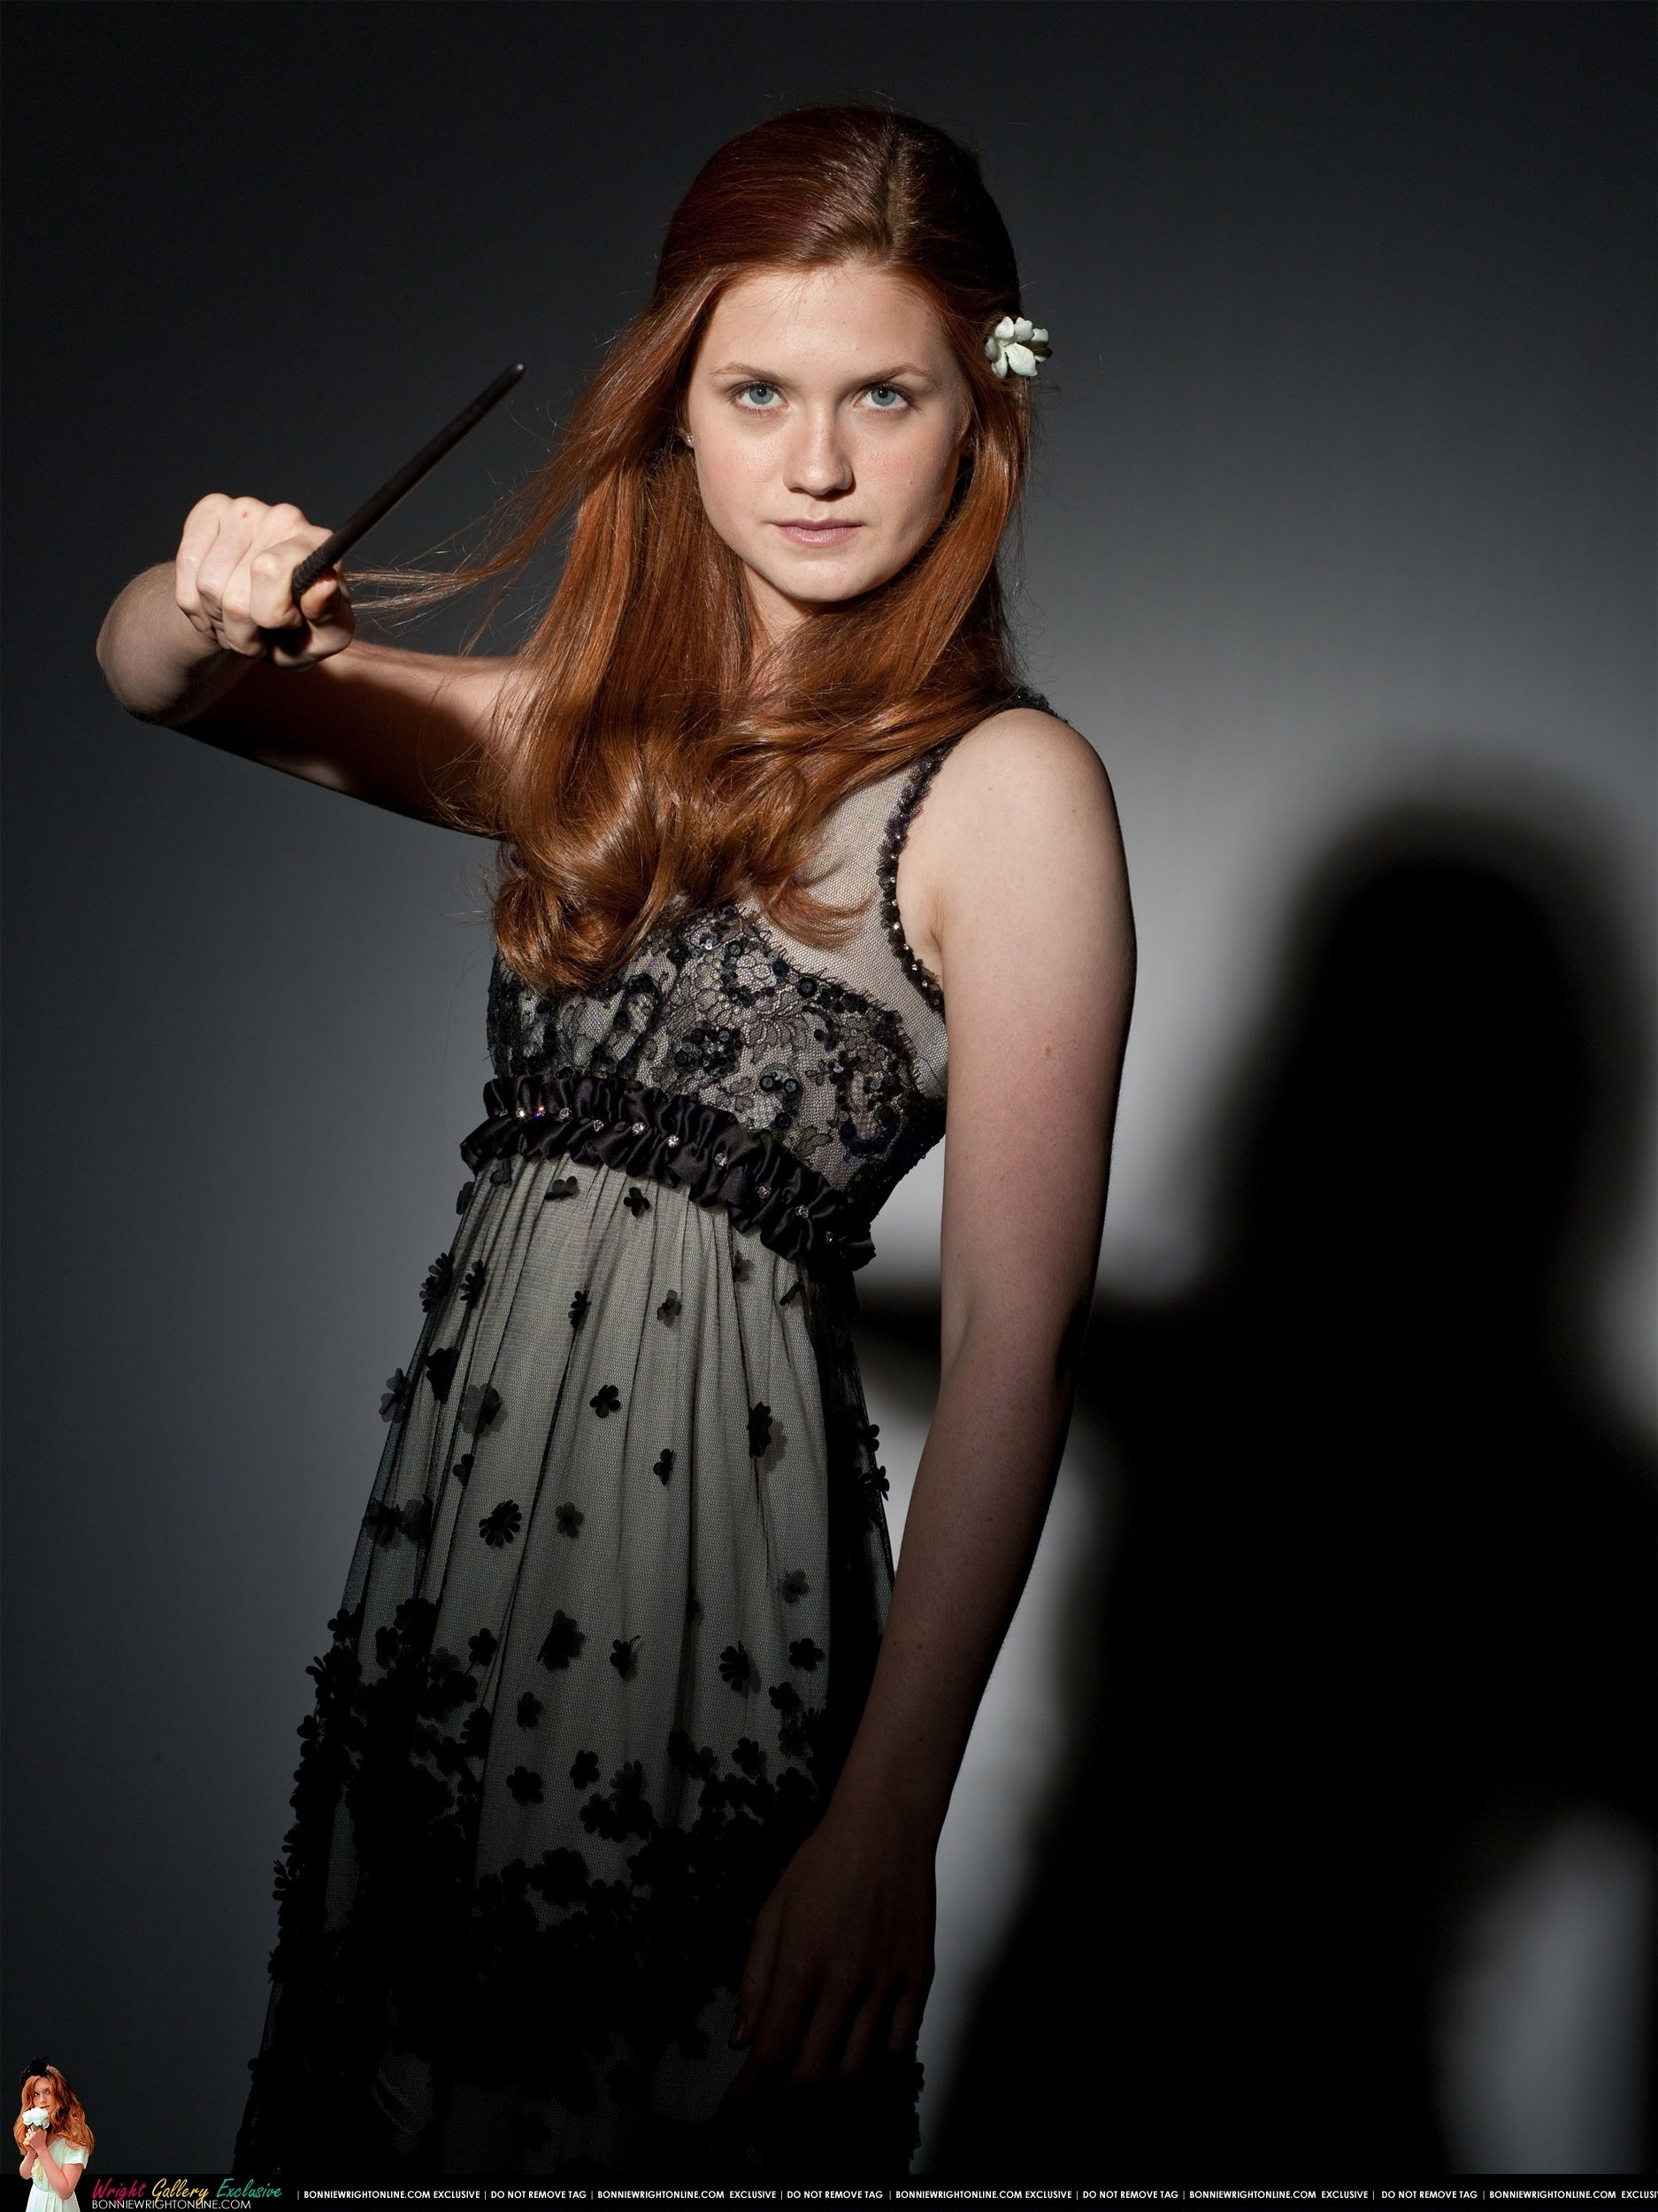 Ginny Weasley Hochzeitskleid
 New DH Part 1 Shoot HQ Bonnie Wright